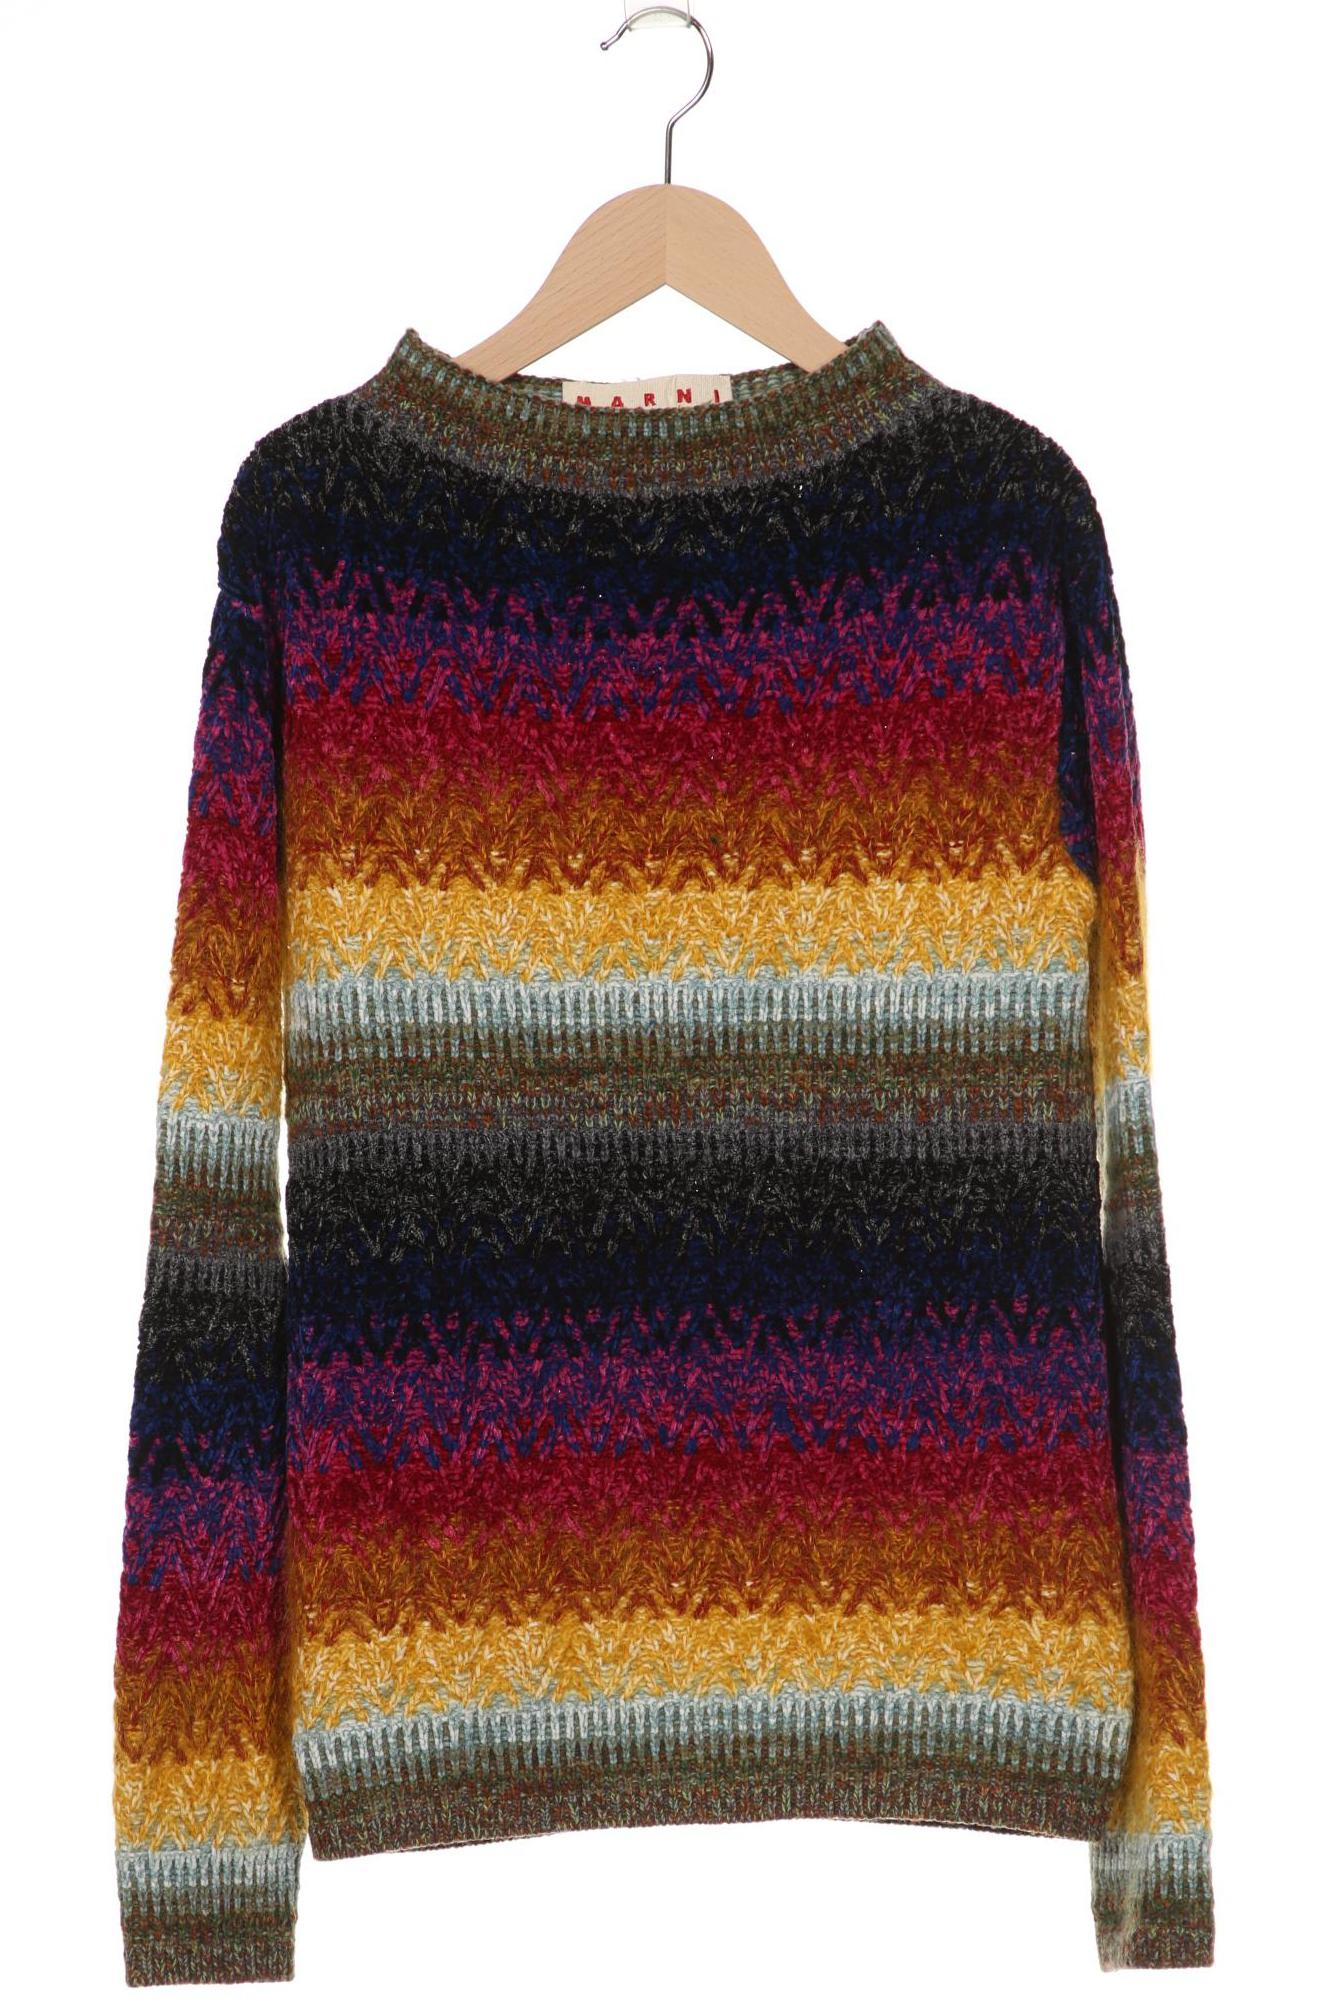 Marni Damen Pullover, mehrfarbig, Gr. 40 von Marni